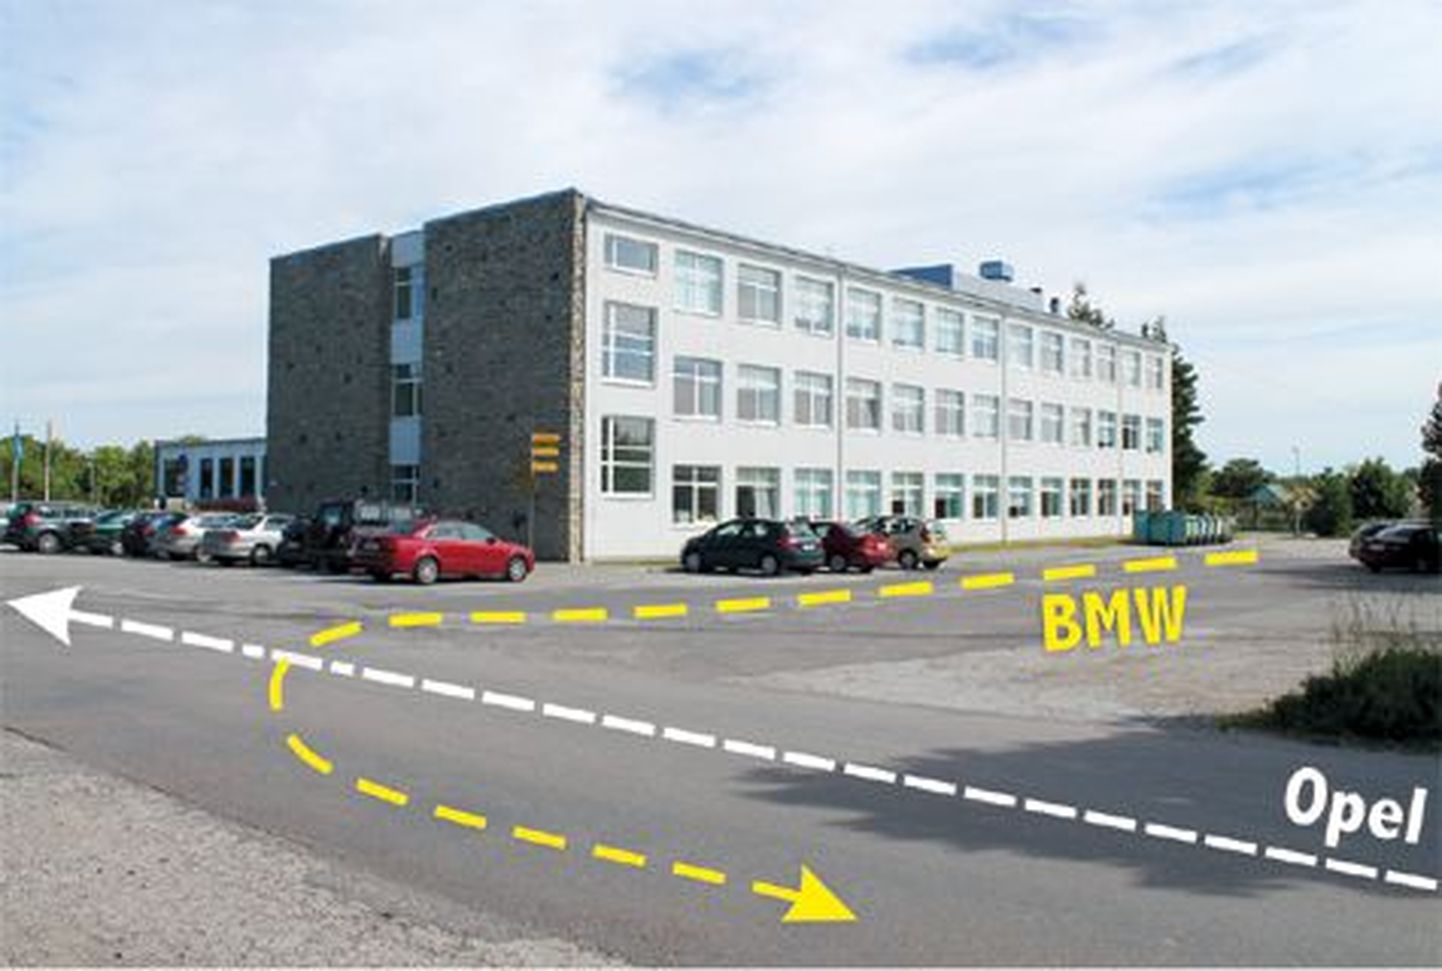 Graafik selgitab järgmist olukorda: kui Ehitajate tee oleks peatee, oleks sõidueesõigus Opeli juhil. Kui tegemist oleks samaliigiliste teede ristmikuga, oleks parema käe reegli järgi eesõigus BMW juhil, kelle parem käsi on vaba.